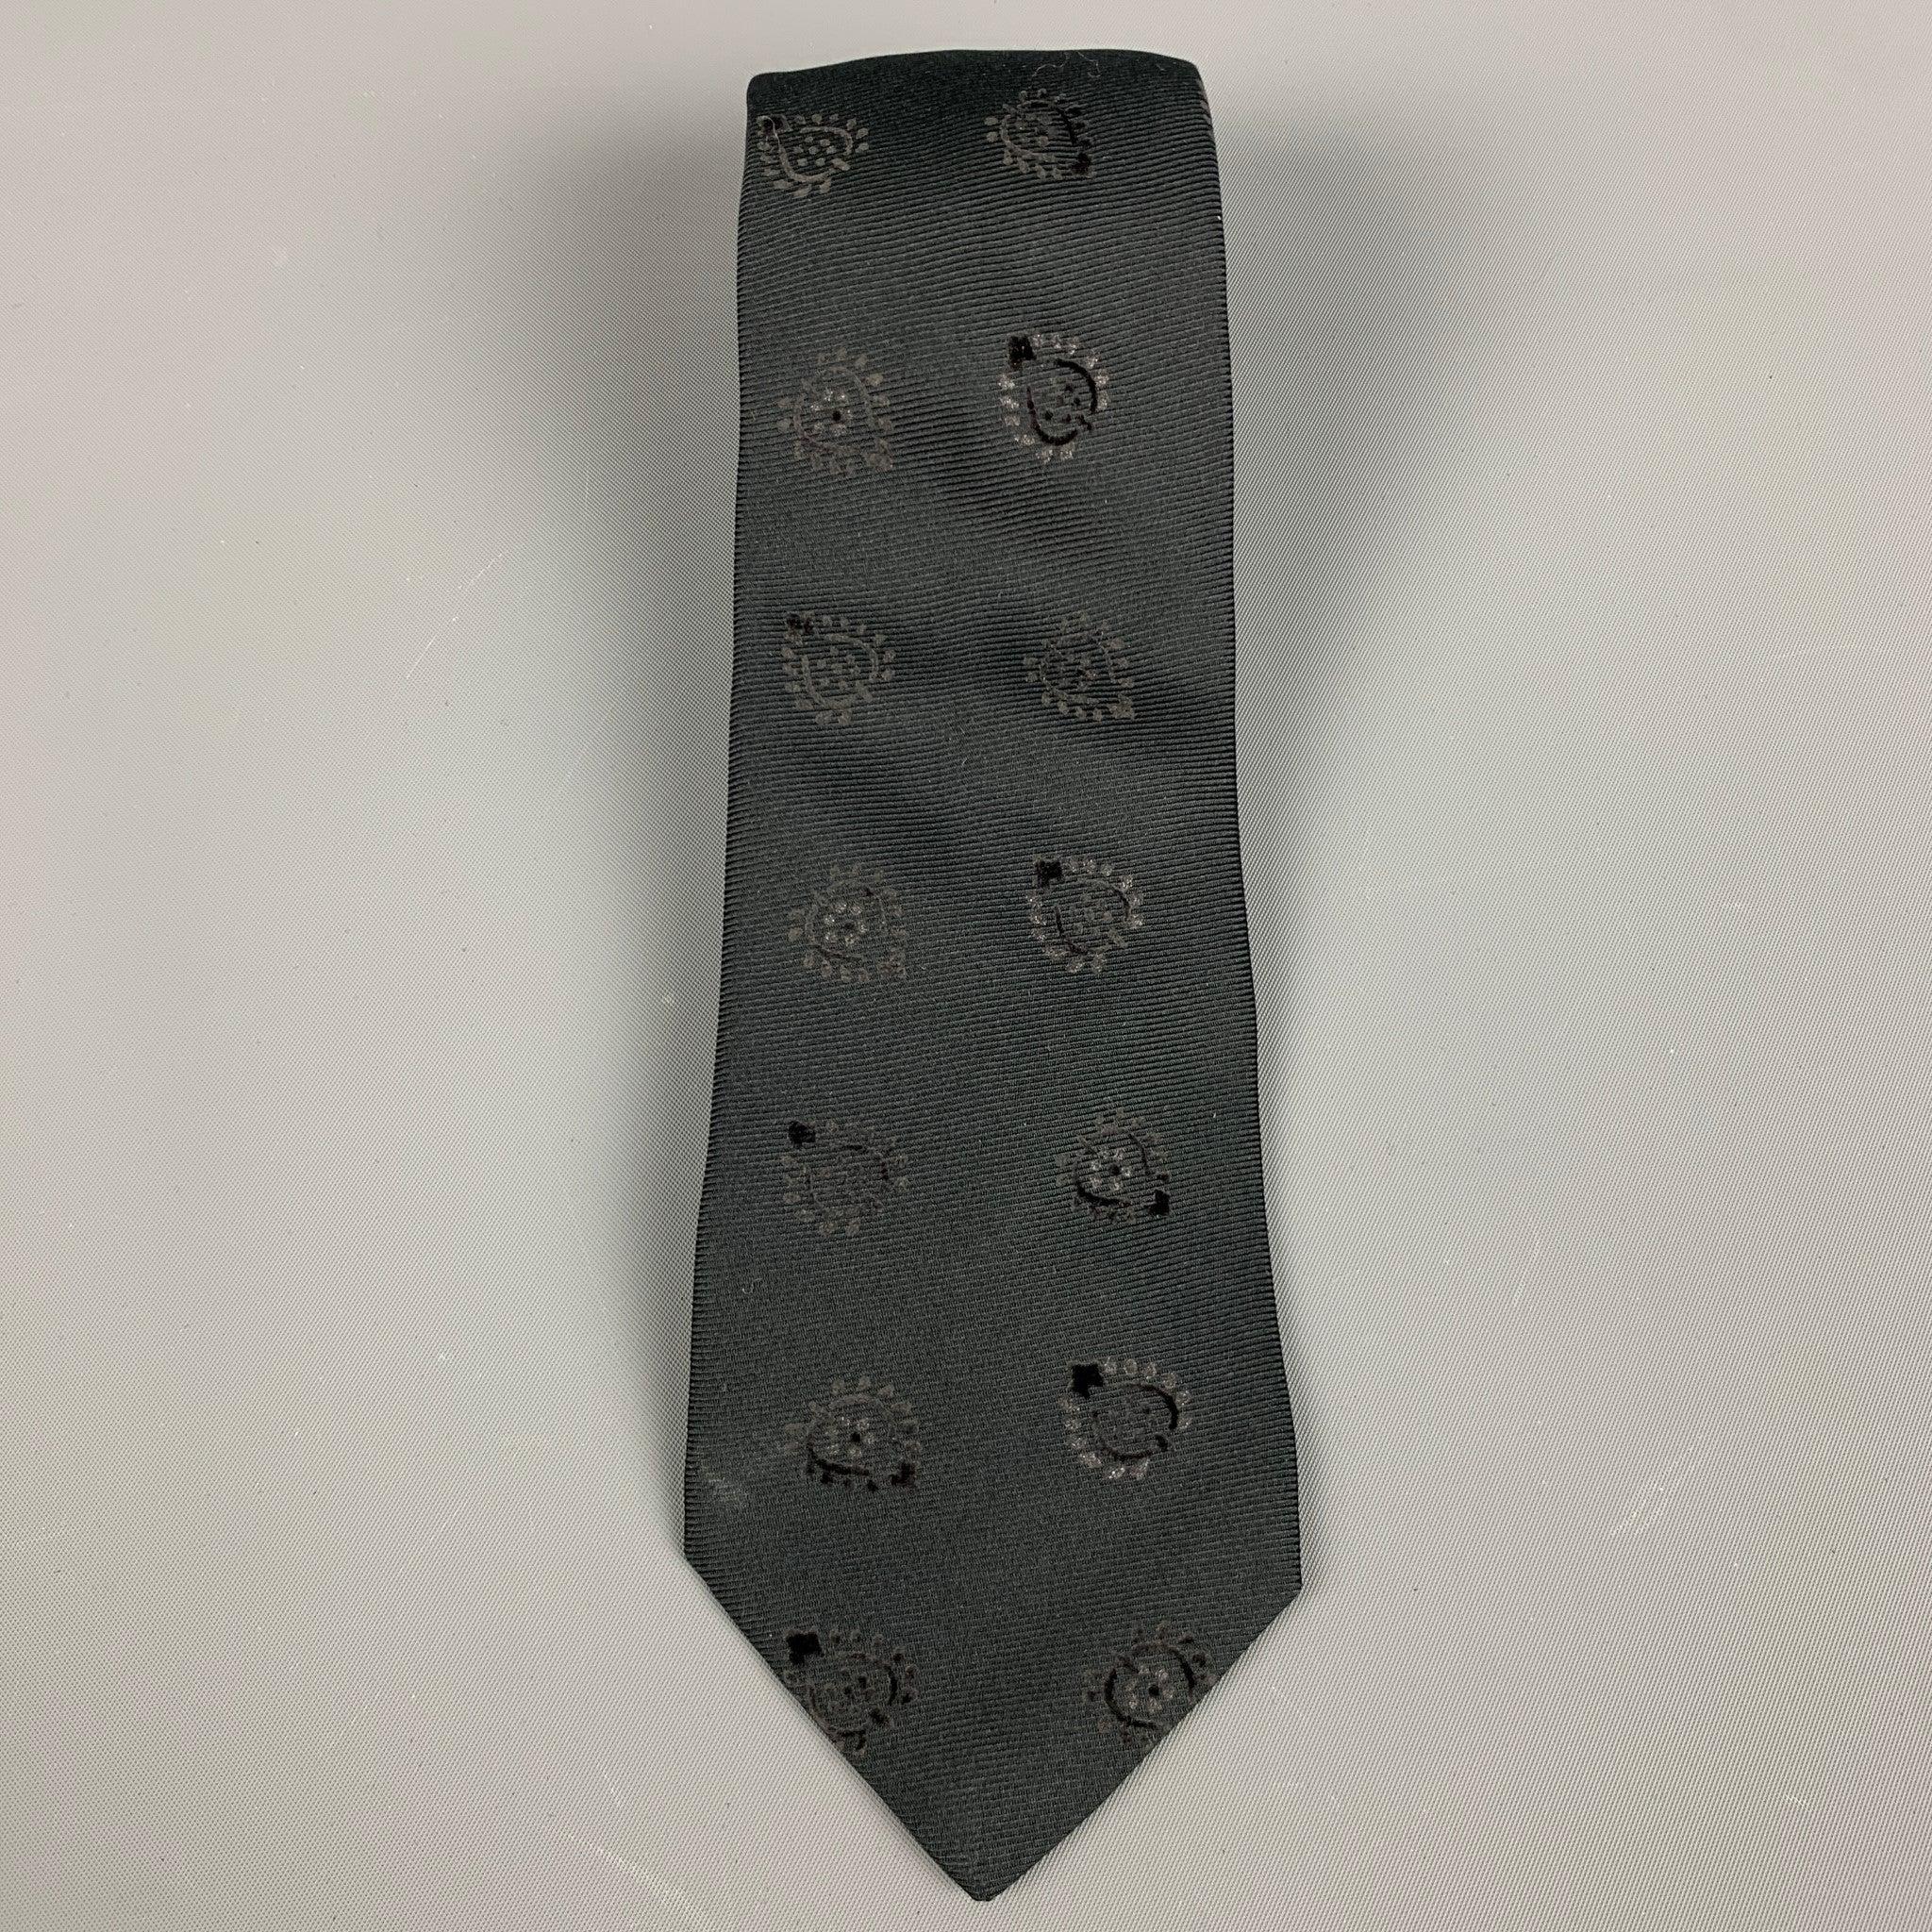 ETRO
Krawatte in einer
Schwarzer Jacquard aus Seidenmischung mit abstraktem Blumenmuster. Made in Italy. sehr guter gebrauchter Zustand. Geringfügiges Zeichen. 

Abmessungen: 
  Breite: 3 Zoll Länge: 62 Zoll 
  
  
 
Referenz: 127993
Kategorie: